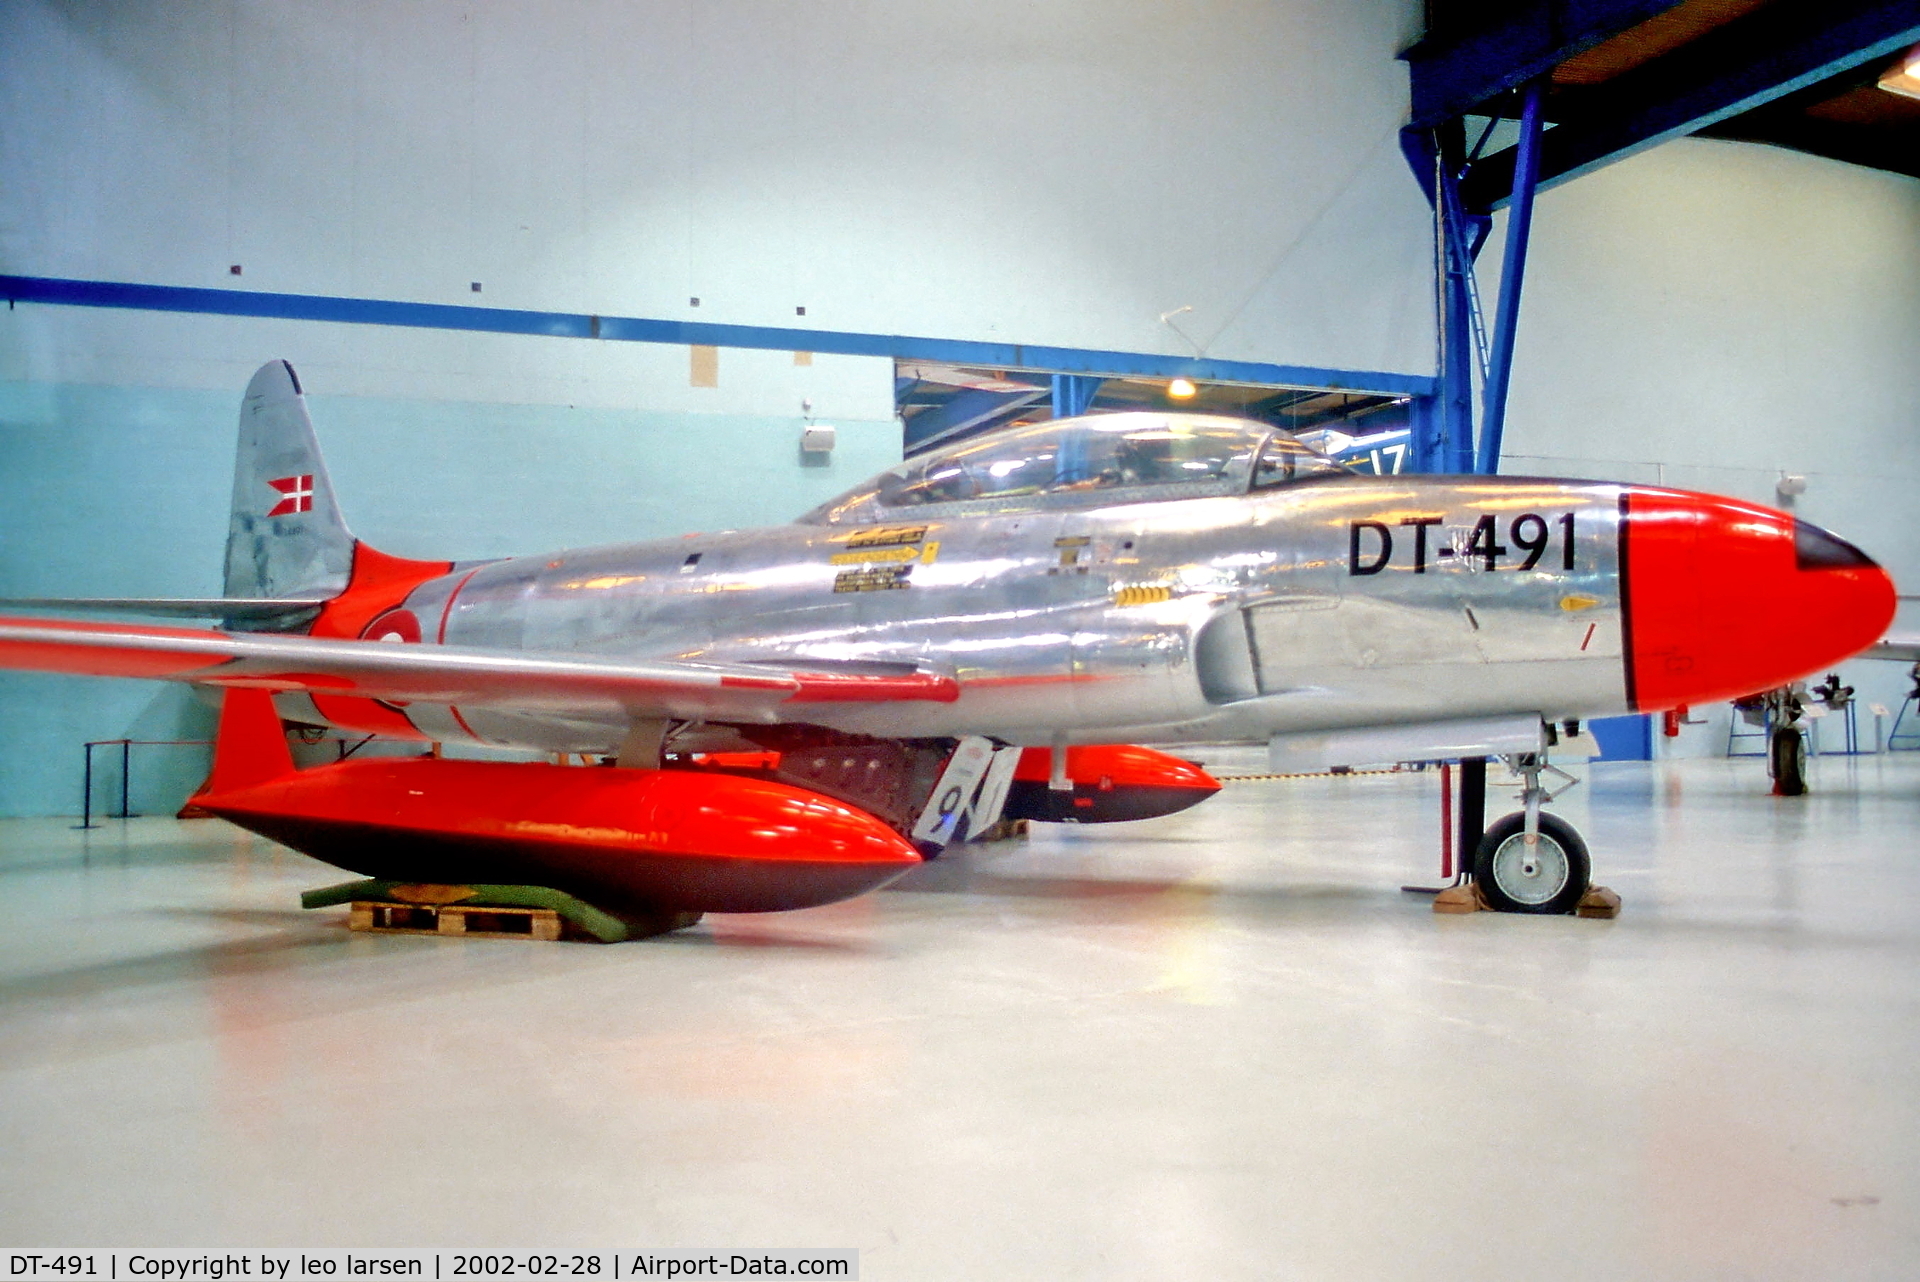 DT-491, Lockheed T-33A Shooting Star C/N 580-5786, Danmarks Terniske Museum,Helsingør
28.2.02